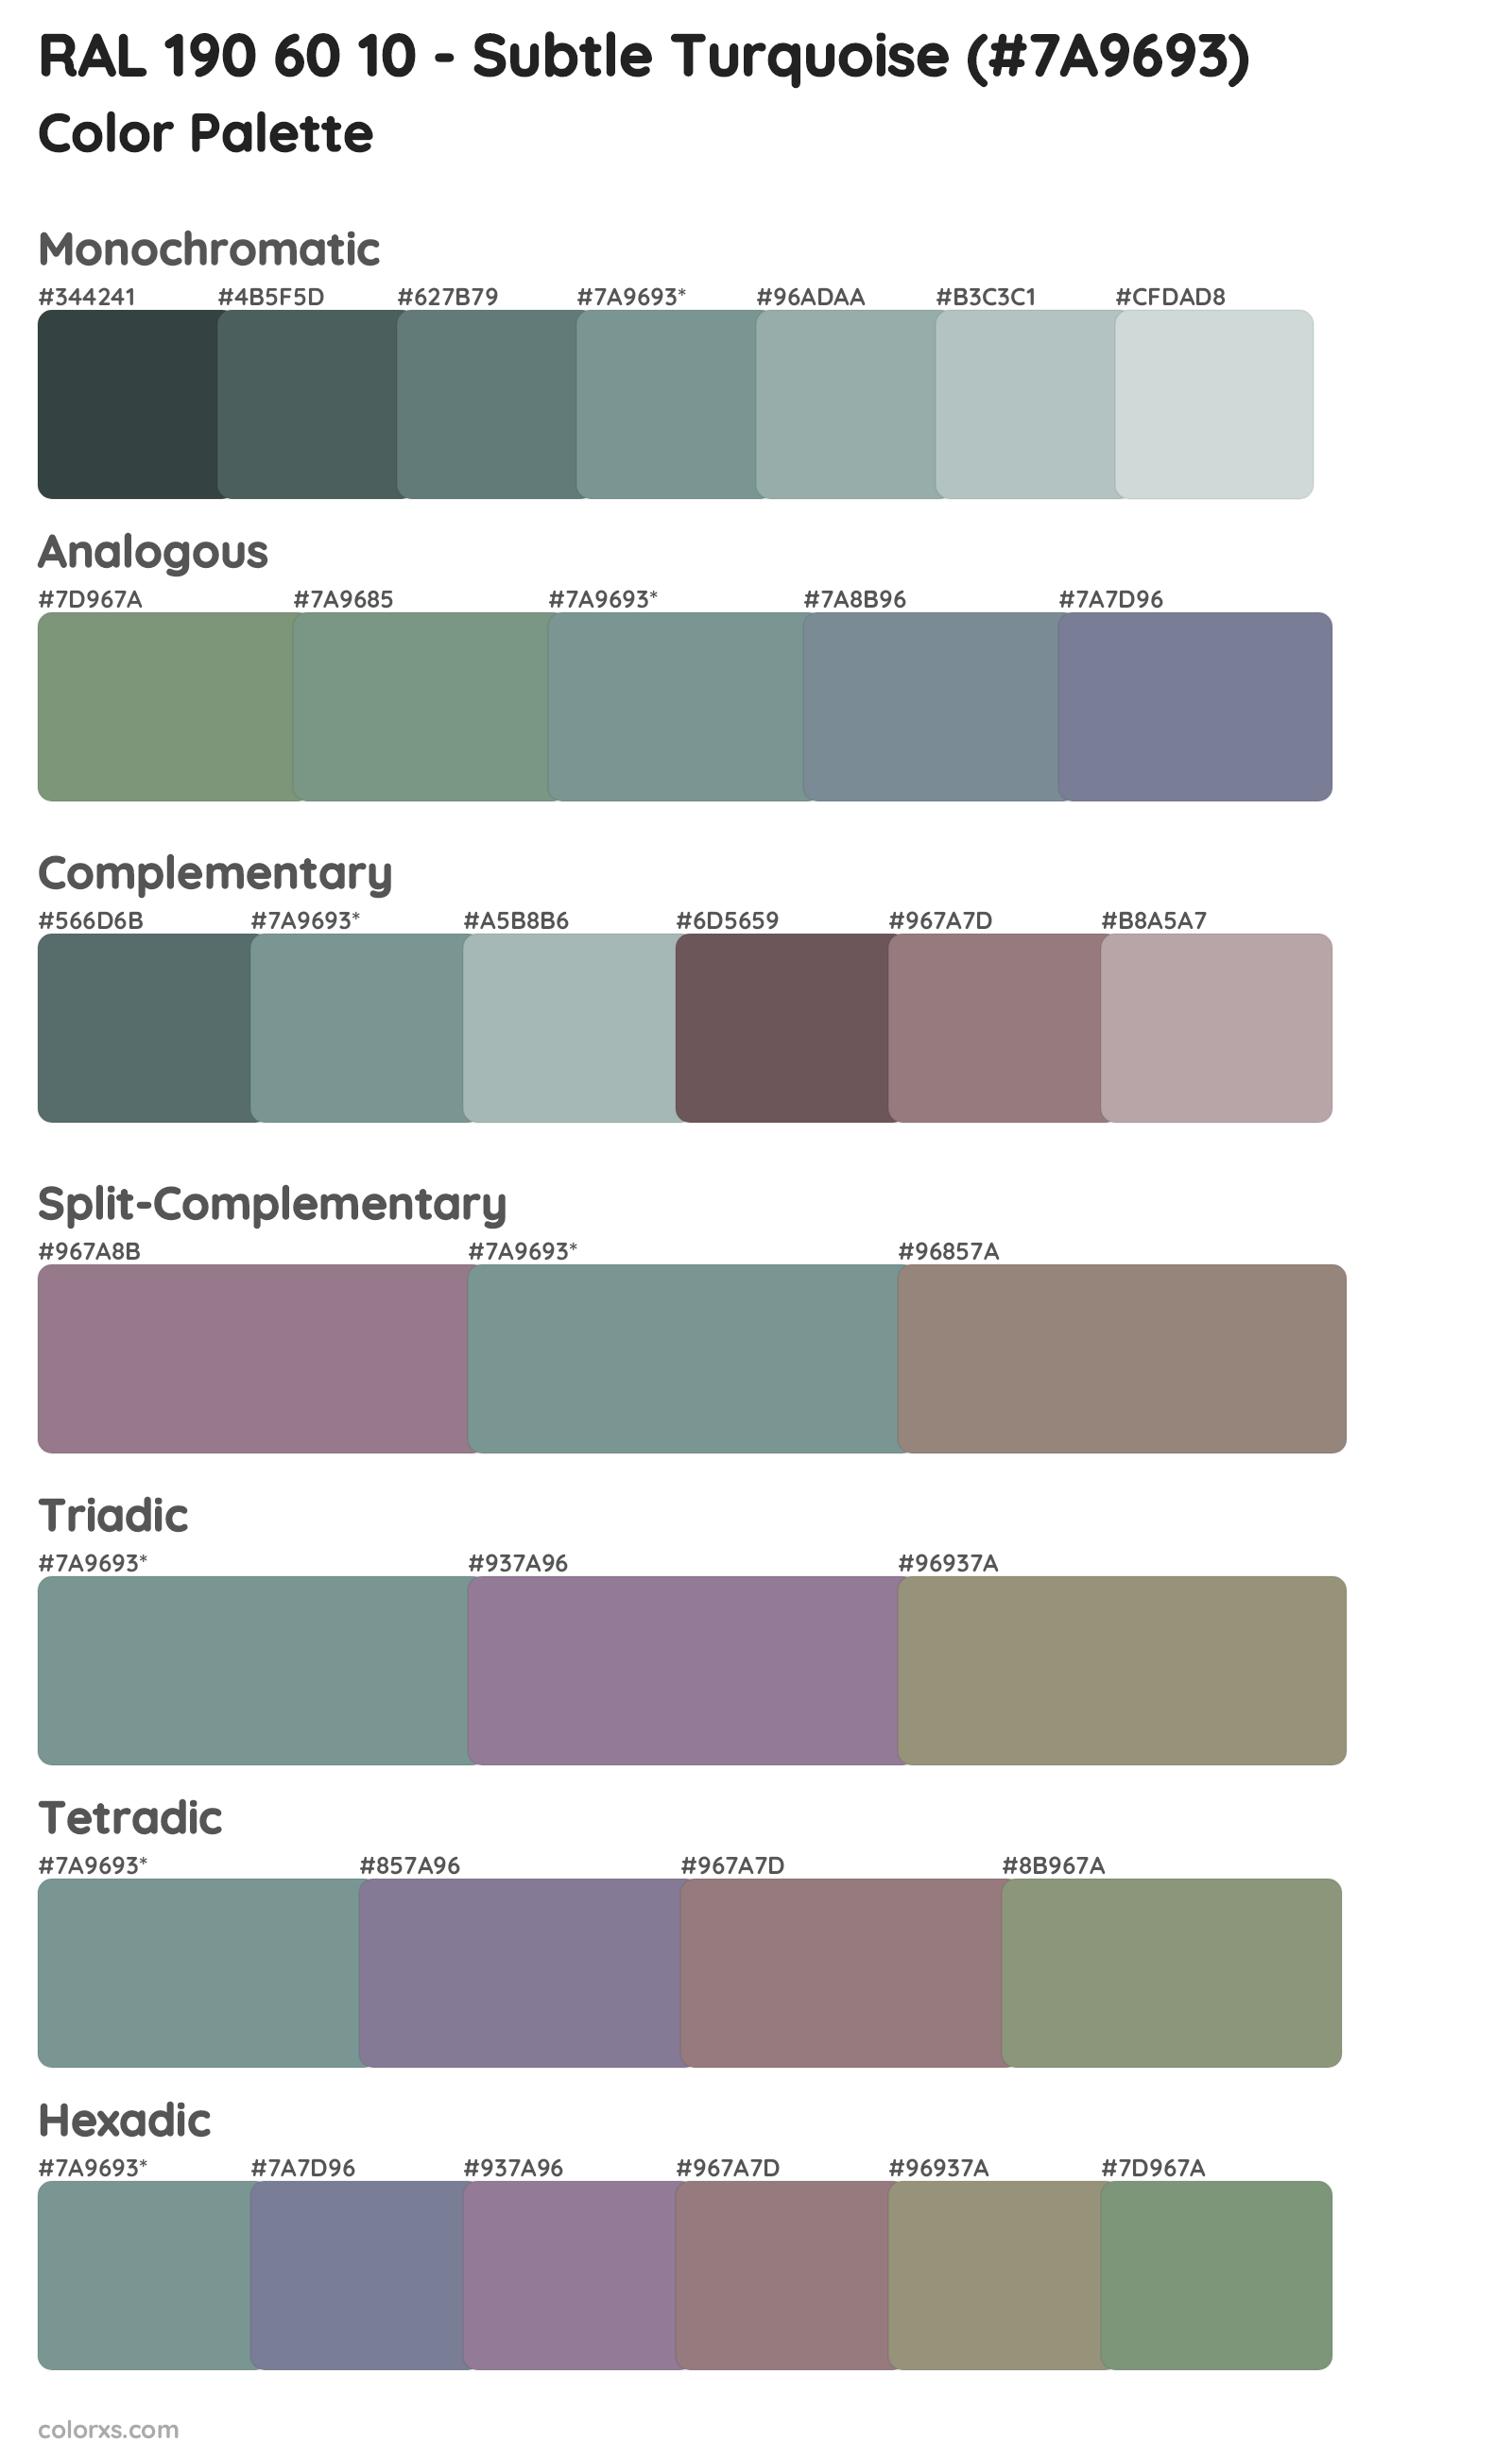 RAL 190 60 10 - Subtle Turquoise Color Scheme Palettes